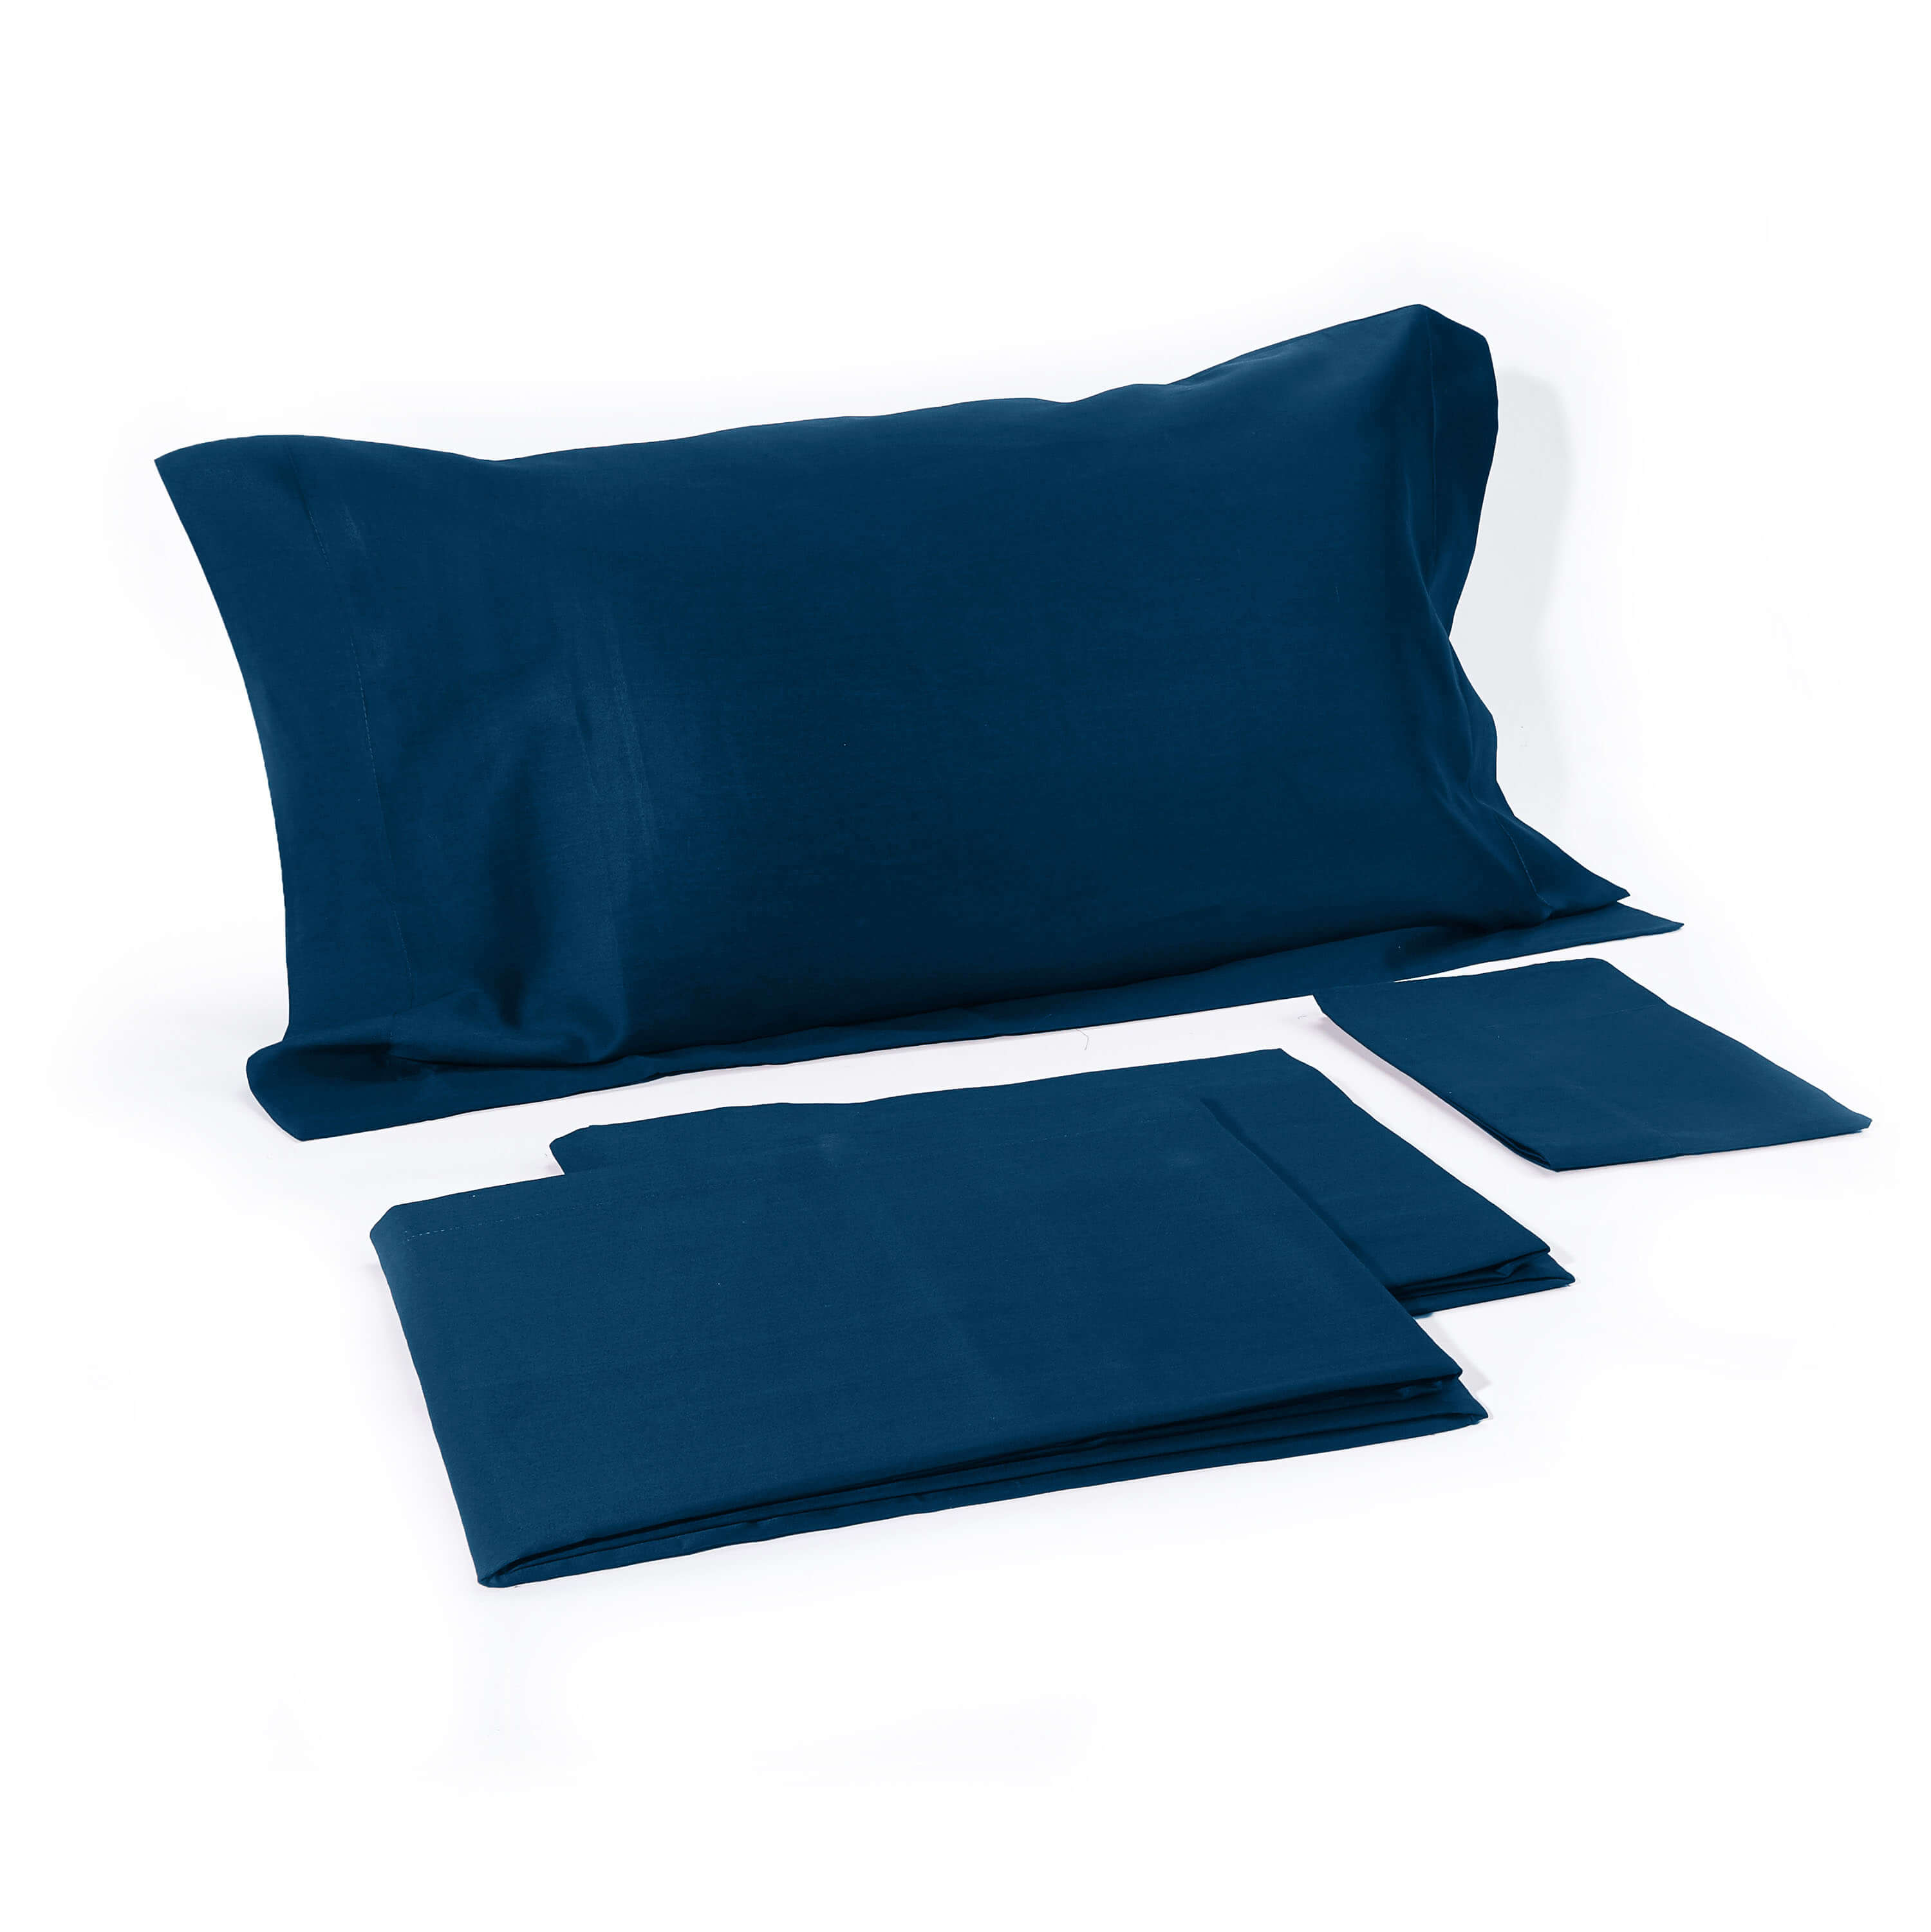 Итальянское постельное белье Elegance Blue ☞ Размер пододеяльника: 200 x 220 см ☞ Размер простыни: 250 x 290 см ☞ Размер наволочек: 50 x 70 см (2 шт.)